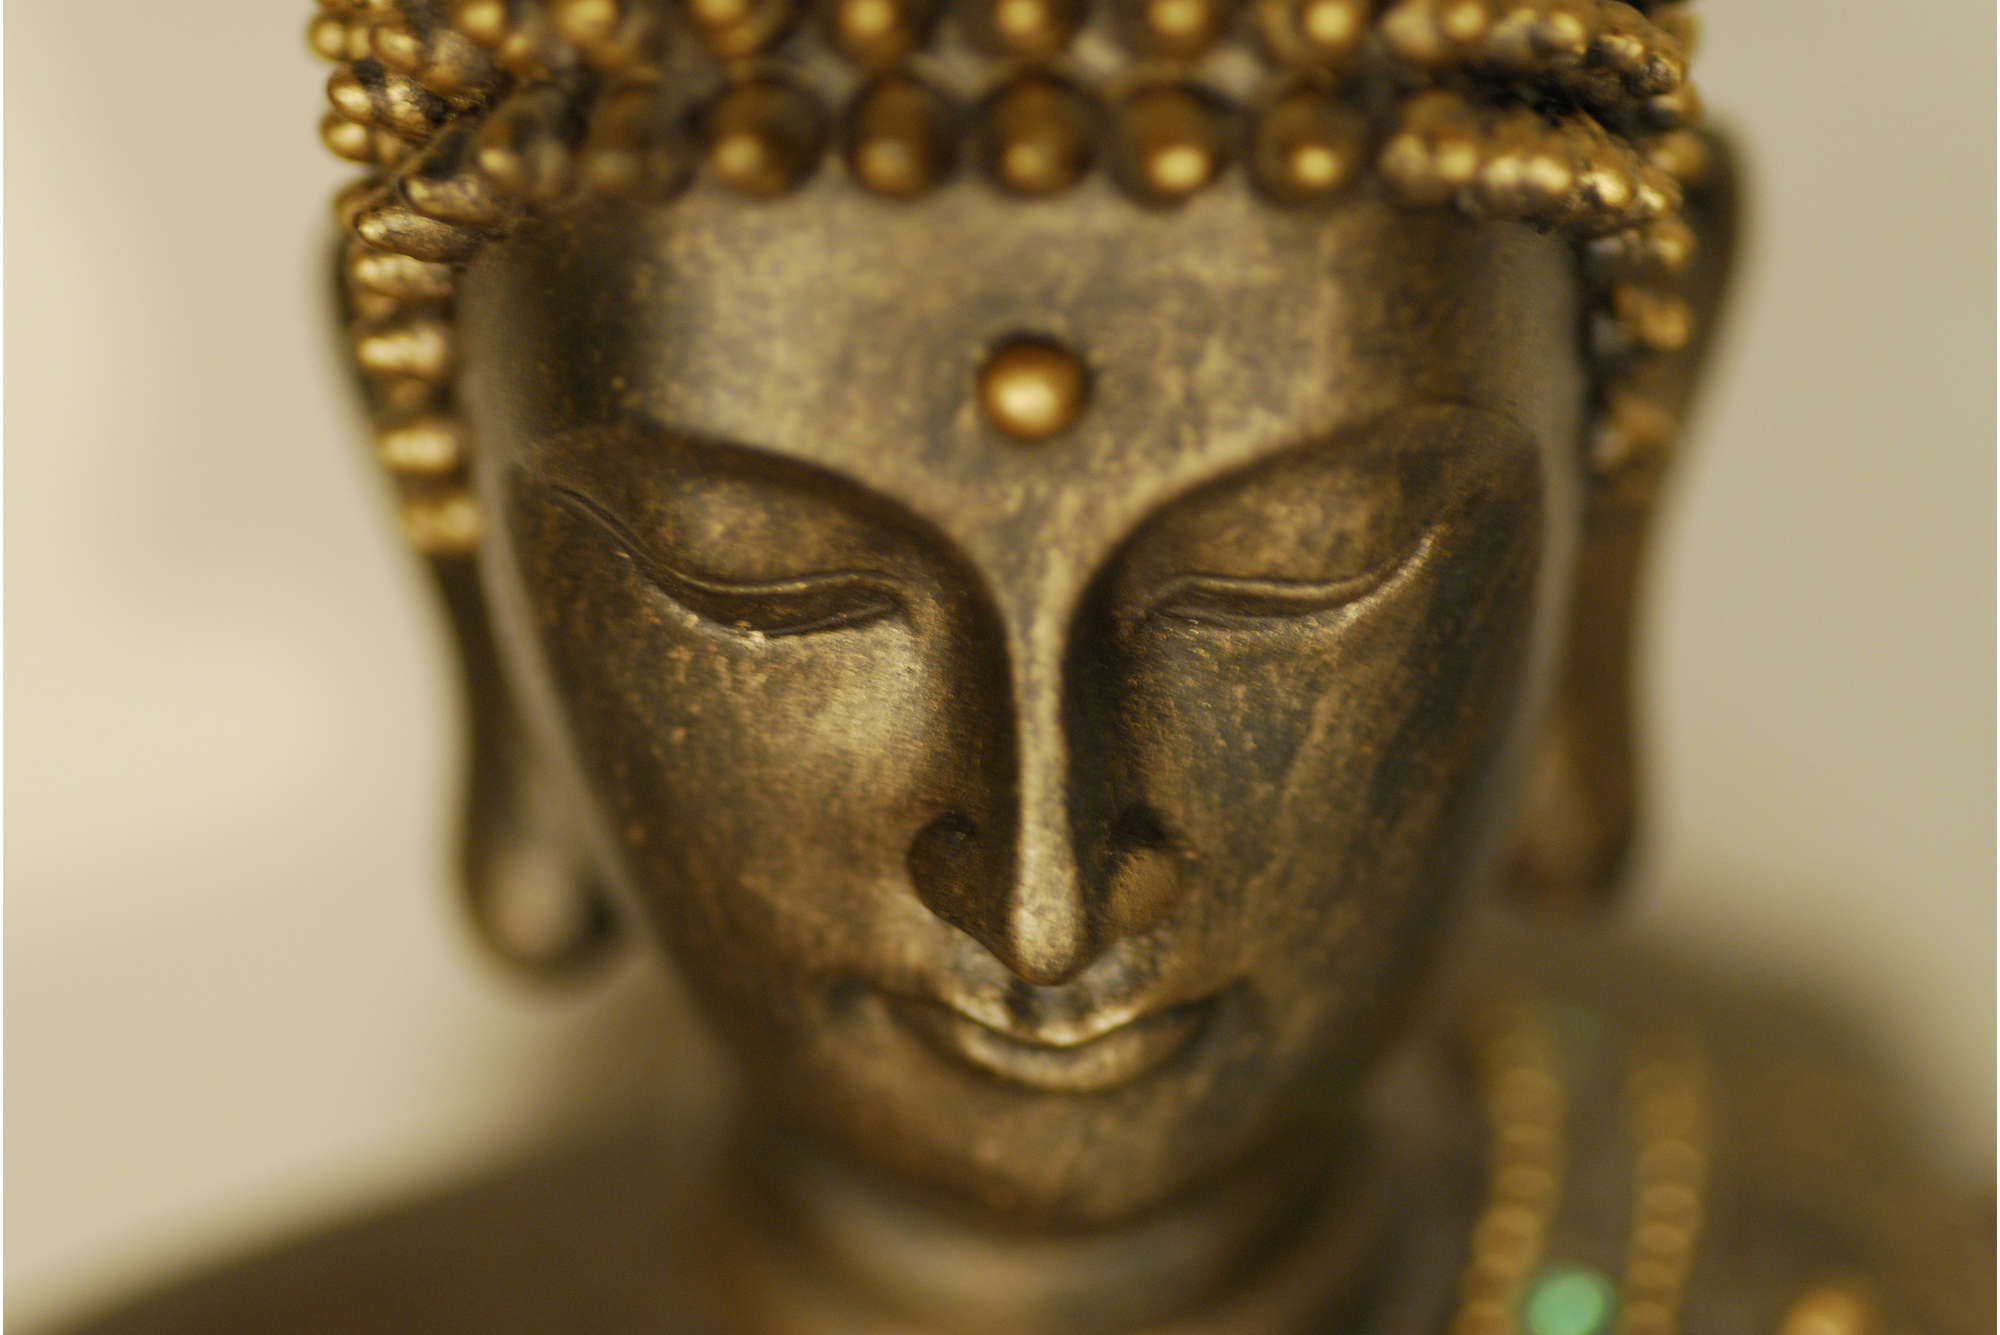             Photo wallpaper close-up of Buddha figure - matt smooth fleece
        